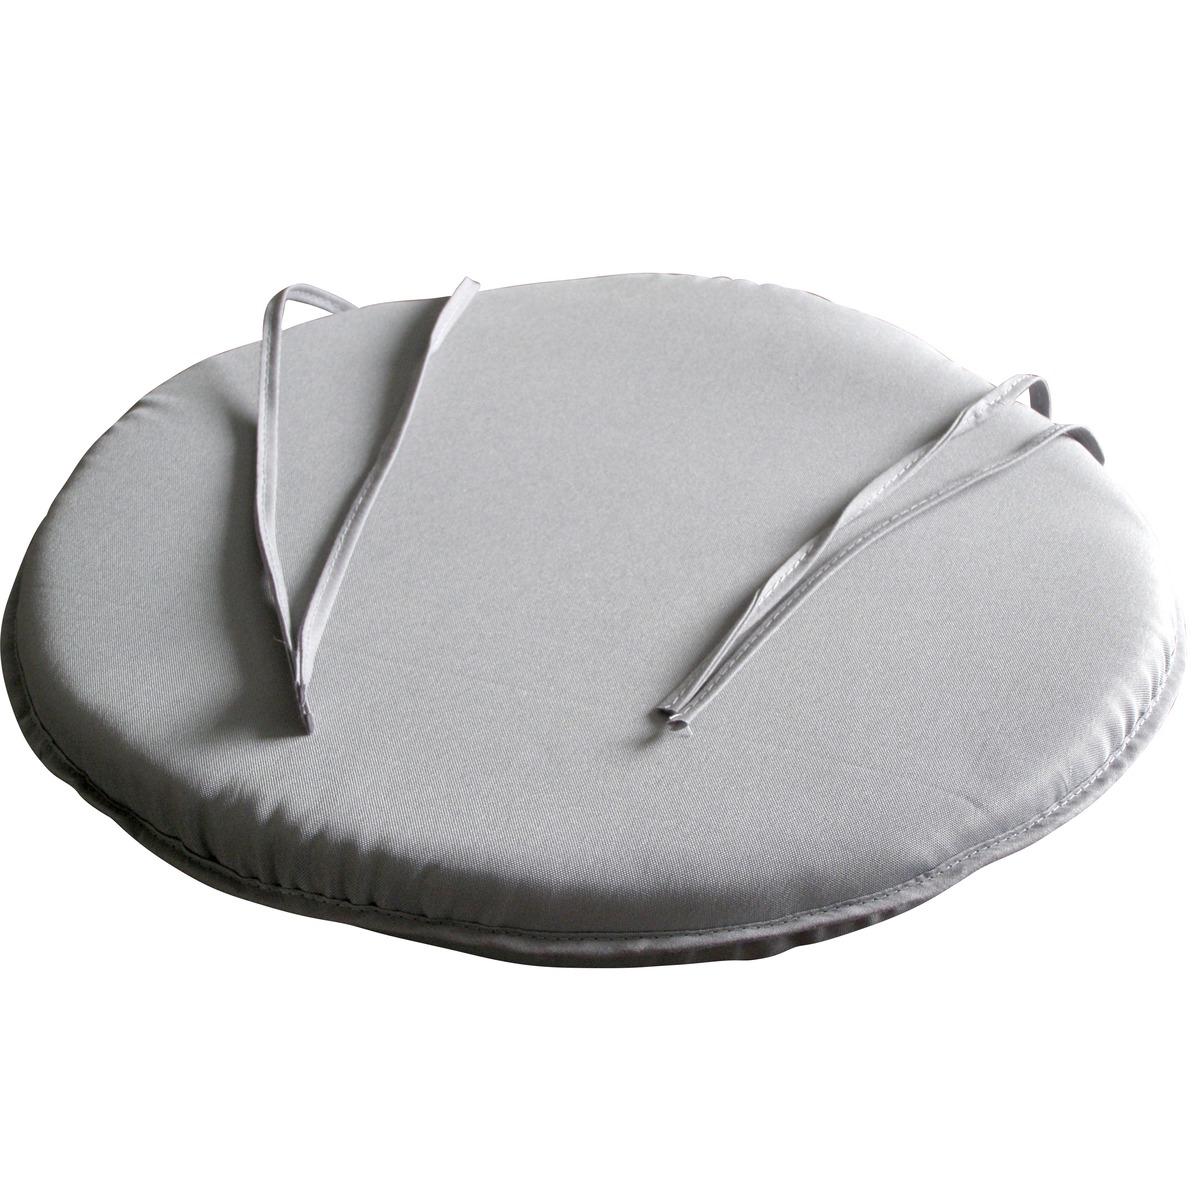 Galette de chaise 100% polyester - Diam. 38 cm - Gris clair